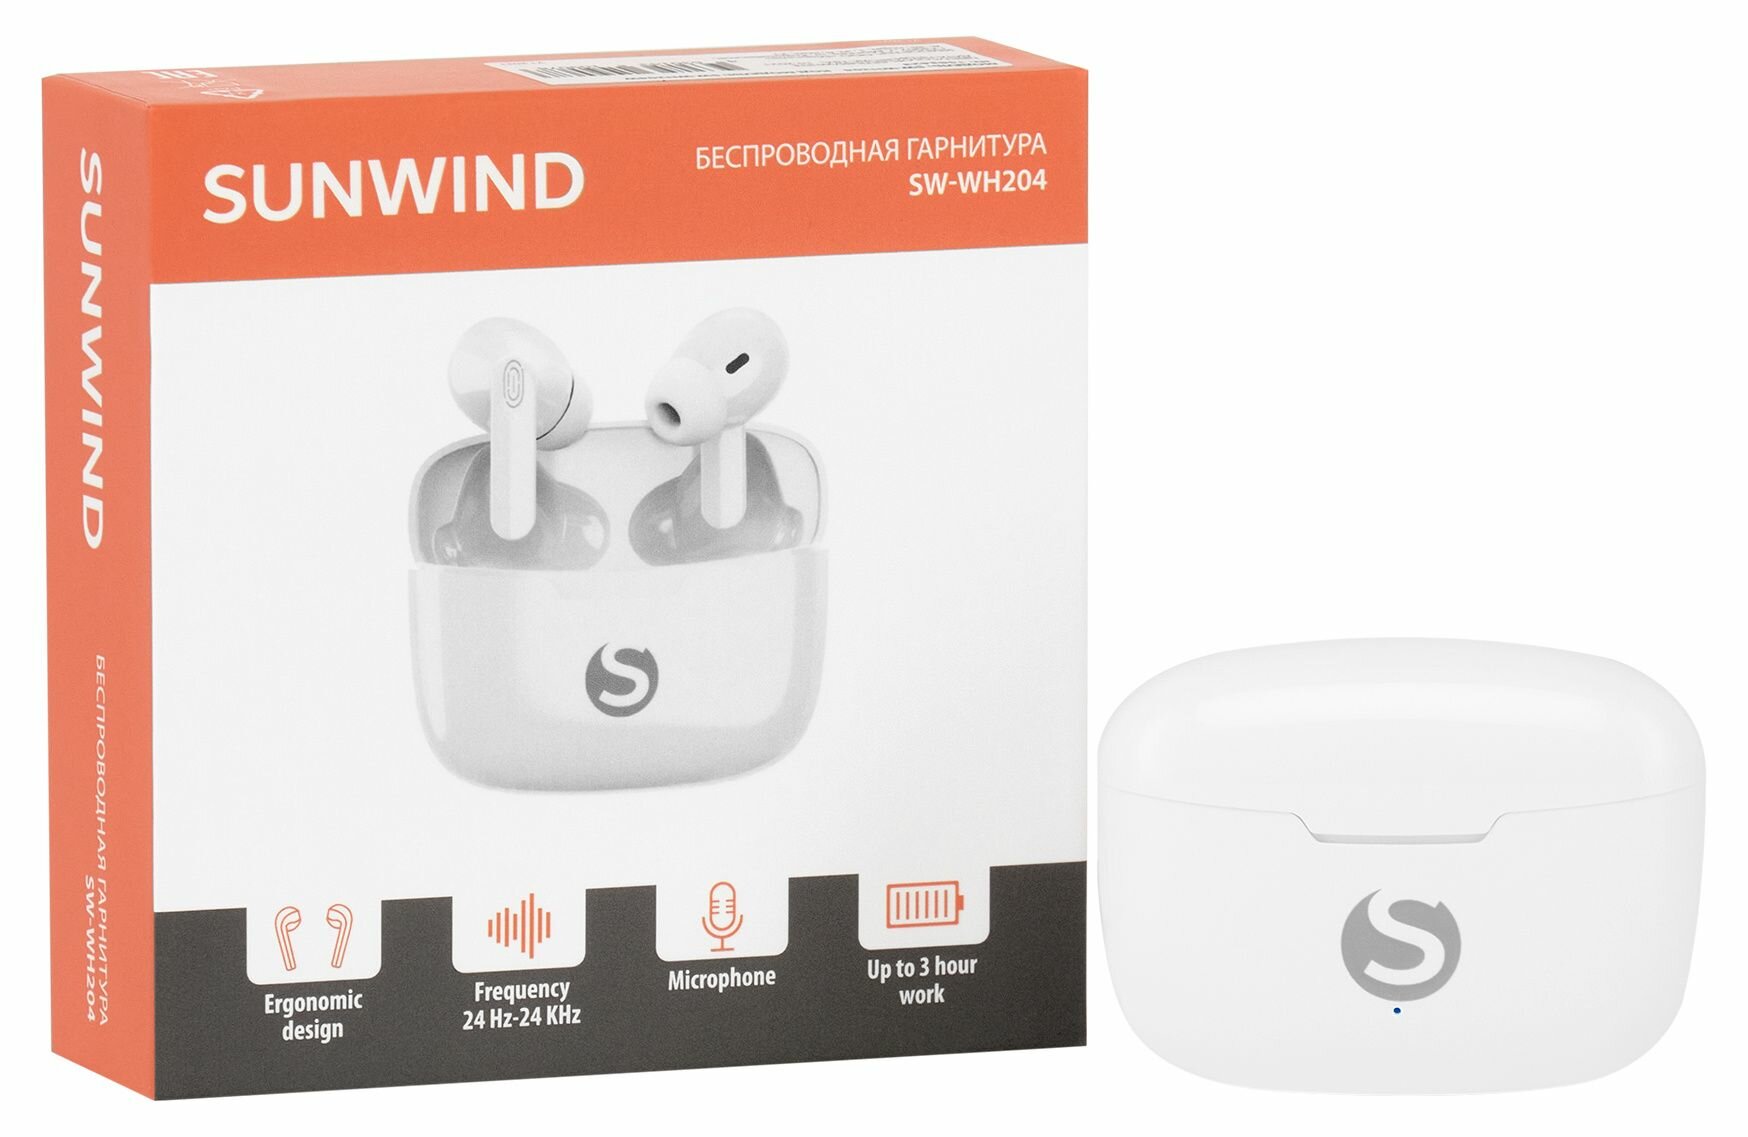 Гарнитура SUNWIND SW-WH204, Bluetooth, вкладыши, белый [sw-wh204w] - фото №15